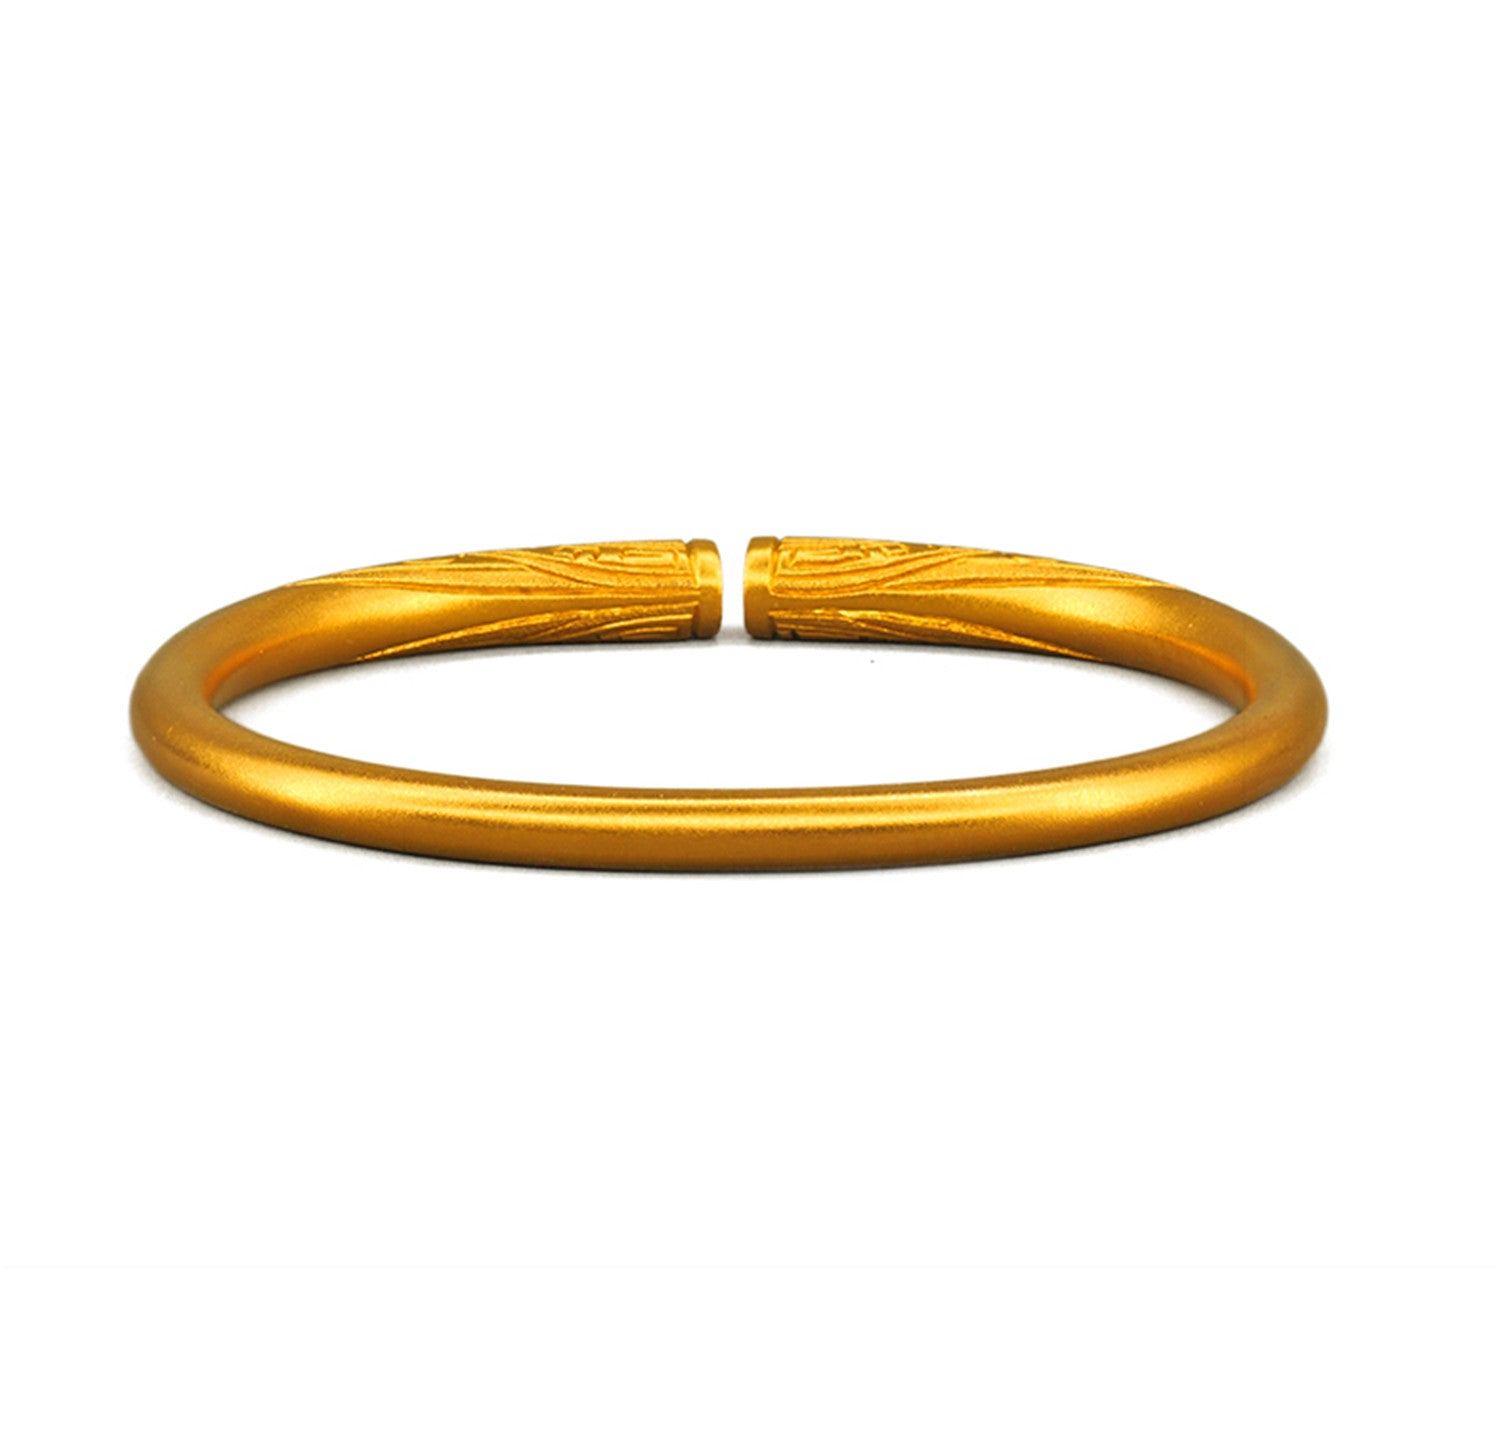 EVECOCO Full Gold Bracelet Hand Forging,Horseshoe Shape,45g